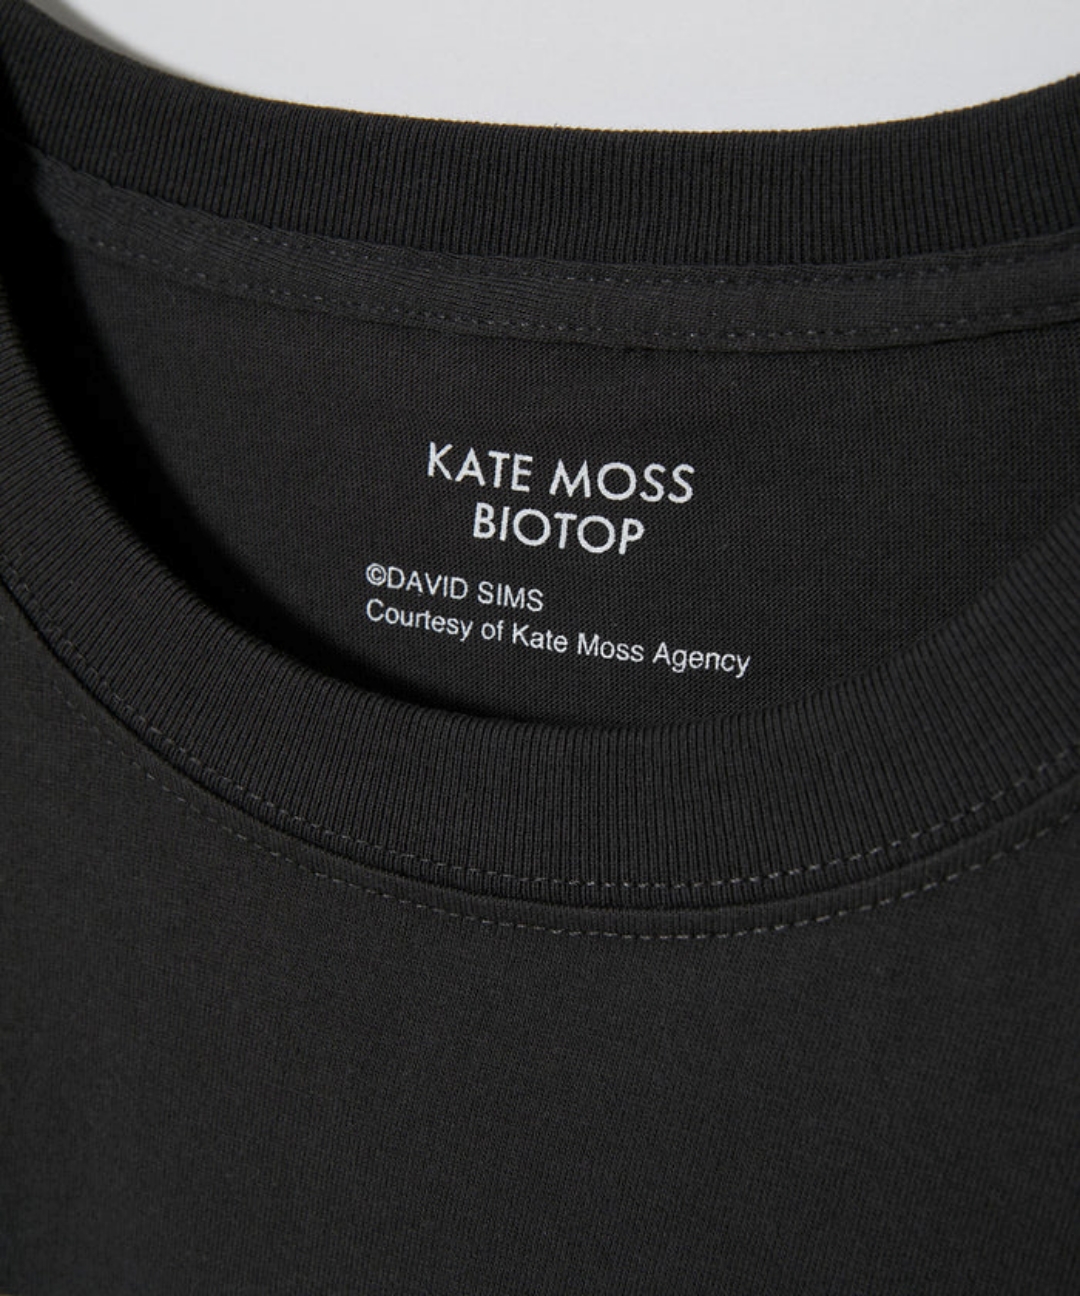 「Kate moss/ケイト・モス」をプリントしたBIOTOP “KateMoss by David Sims” TEEが予約販売 (ビオトープ)